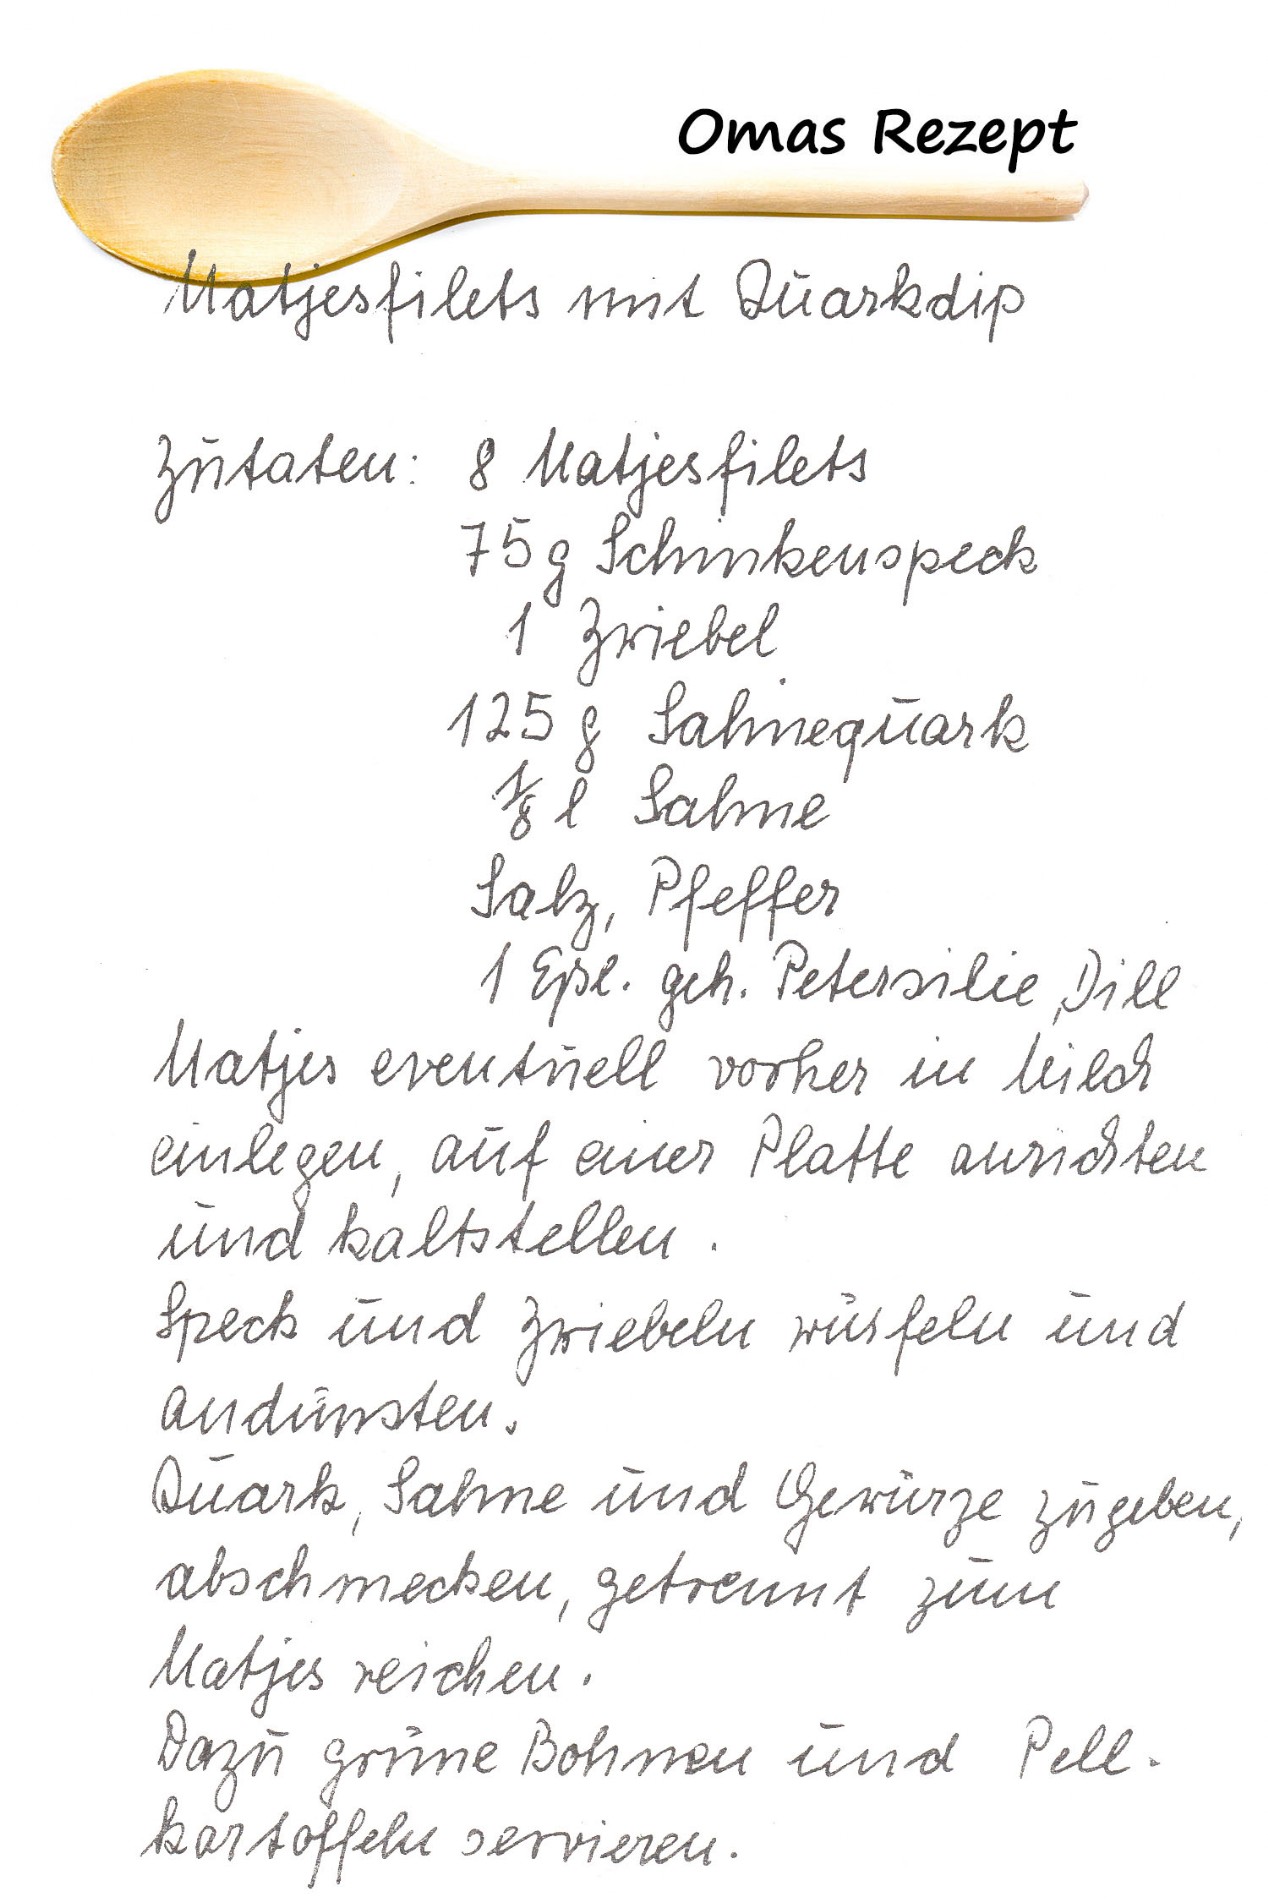 Matjesfilets mit Quarkchips aus Omas Kochbuch 